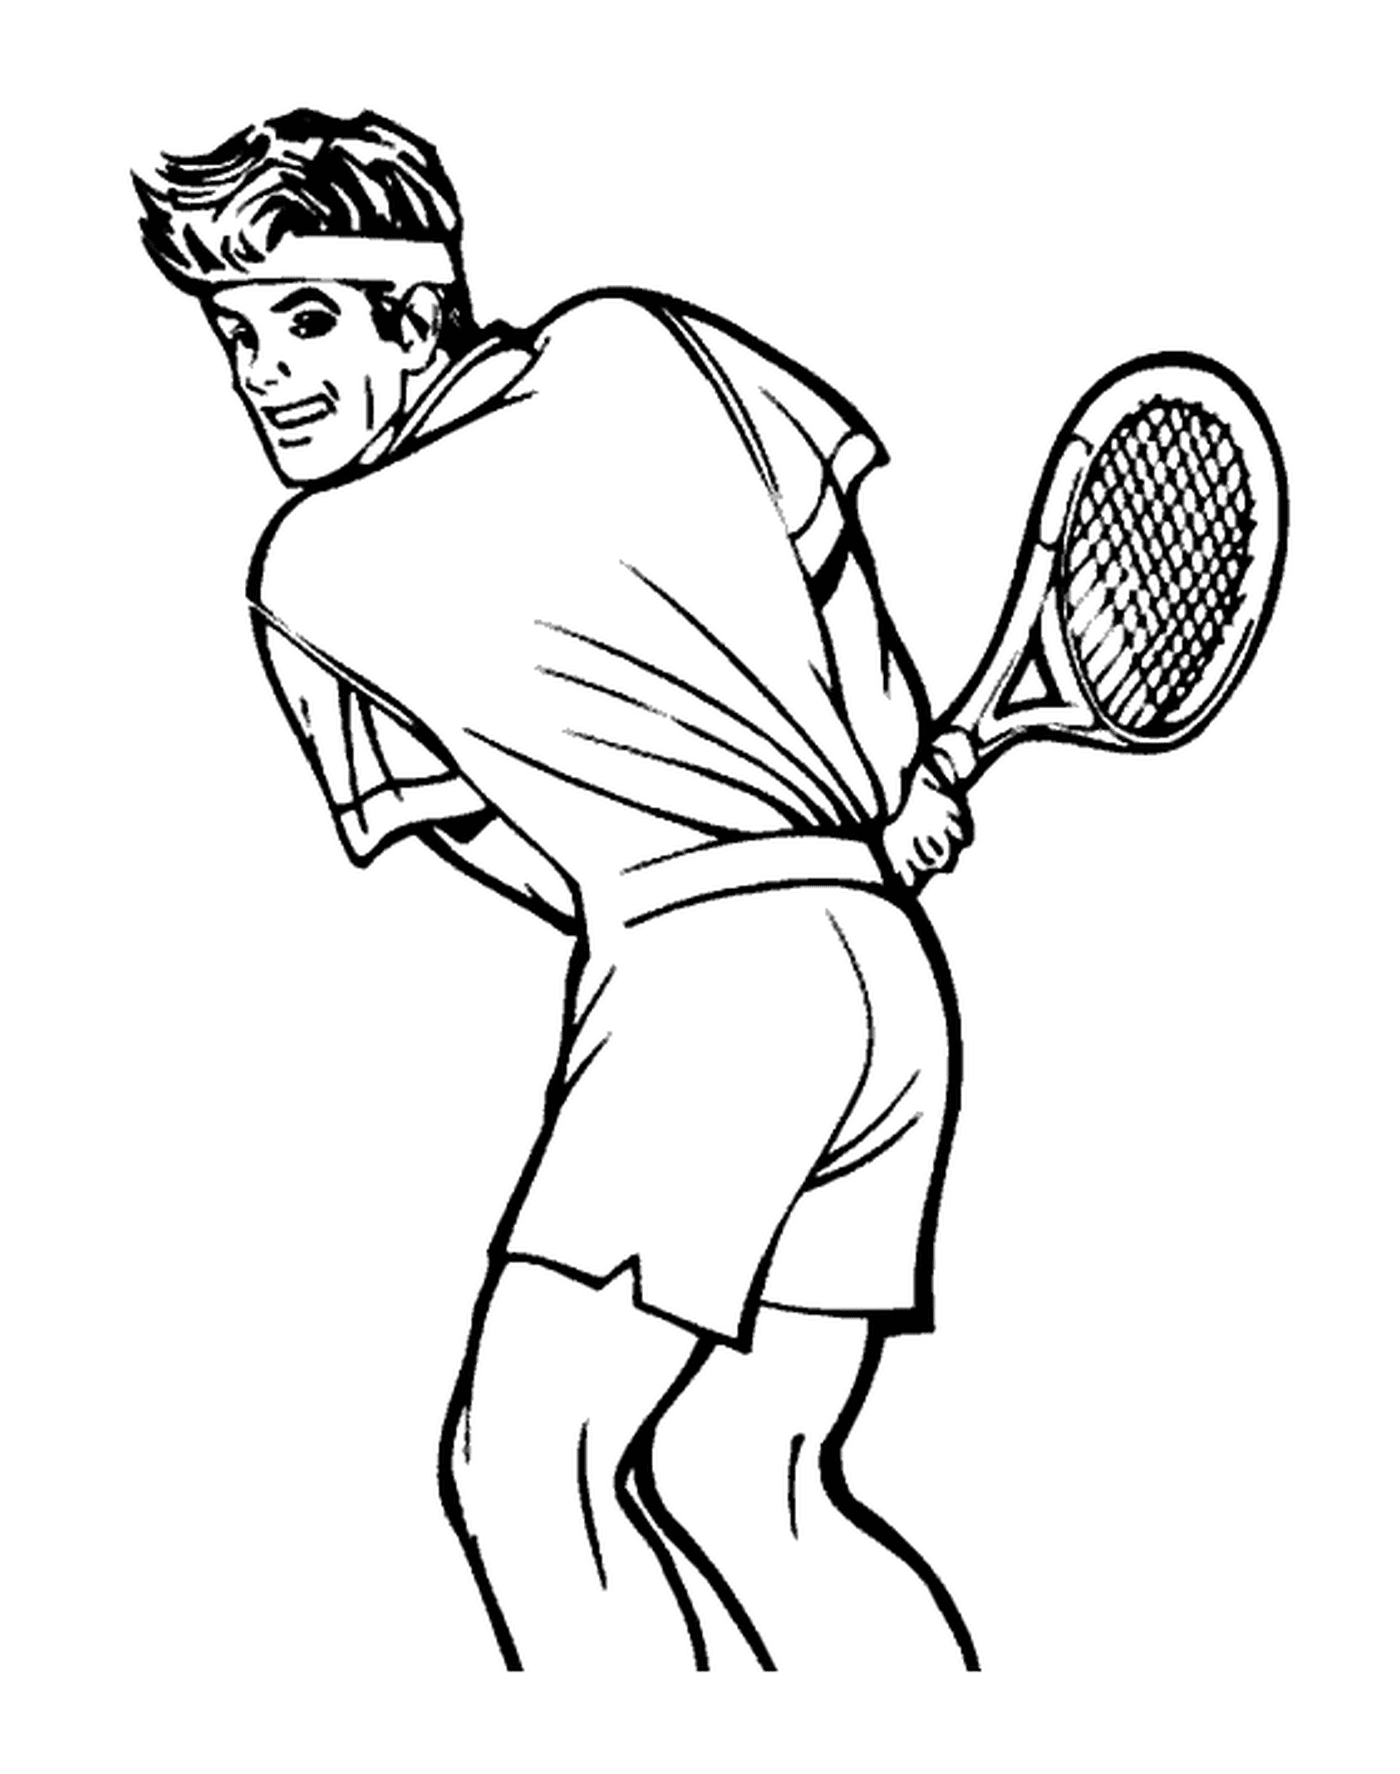  Un tennista sul campo 